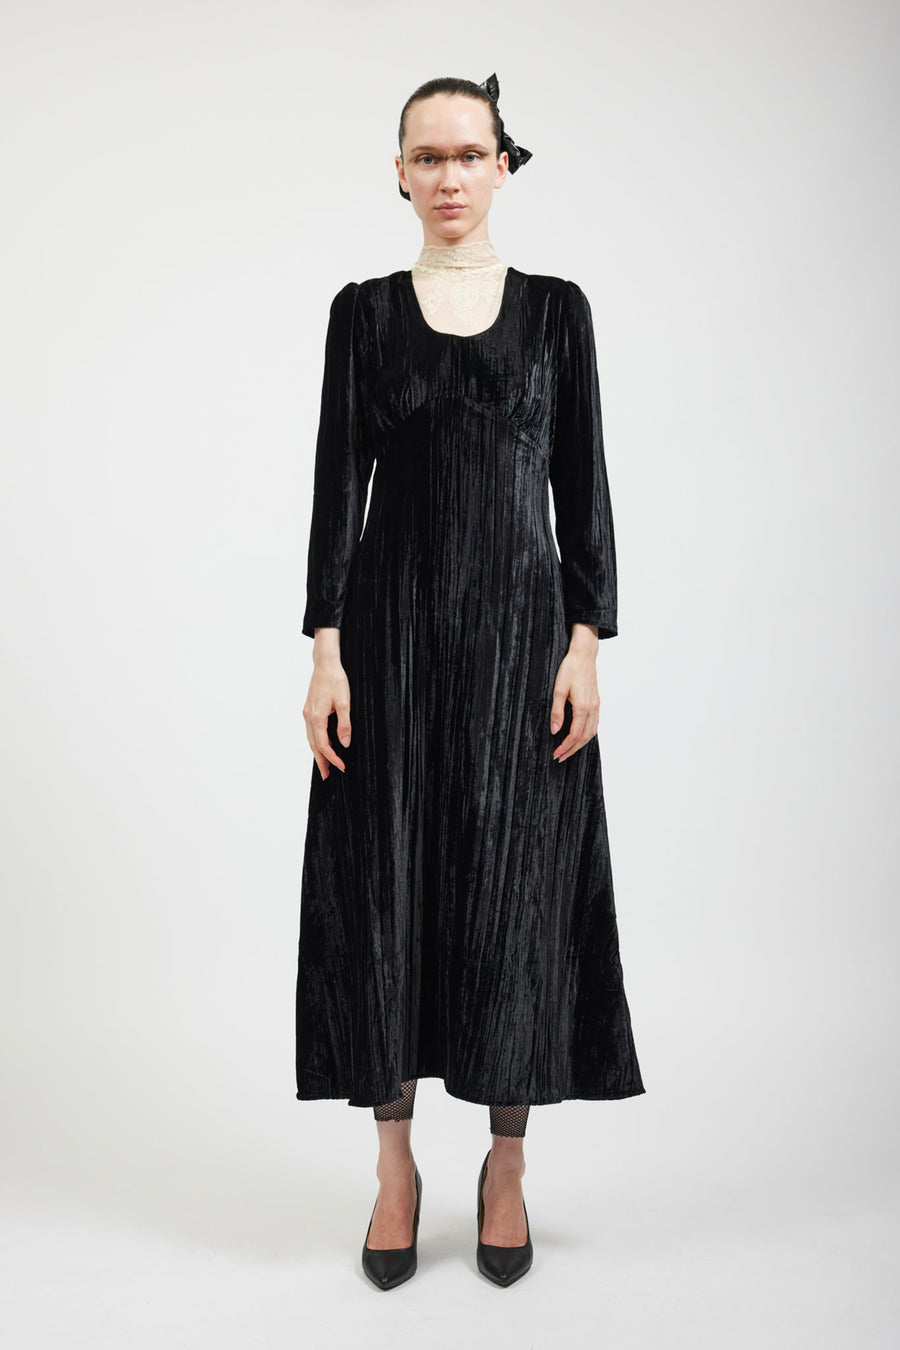 BATSHEVA - Maryjane Dress in Black Crushed Velvet